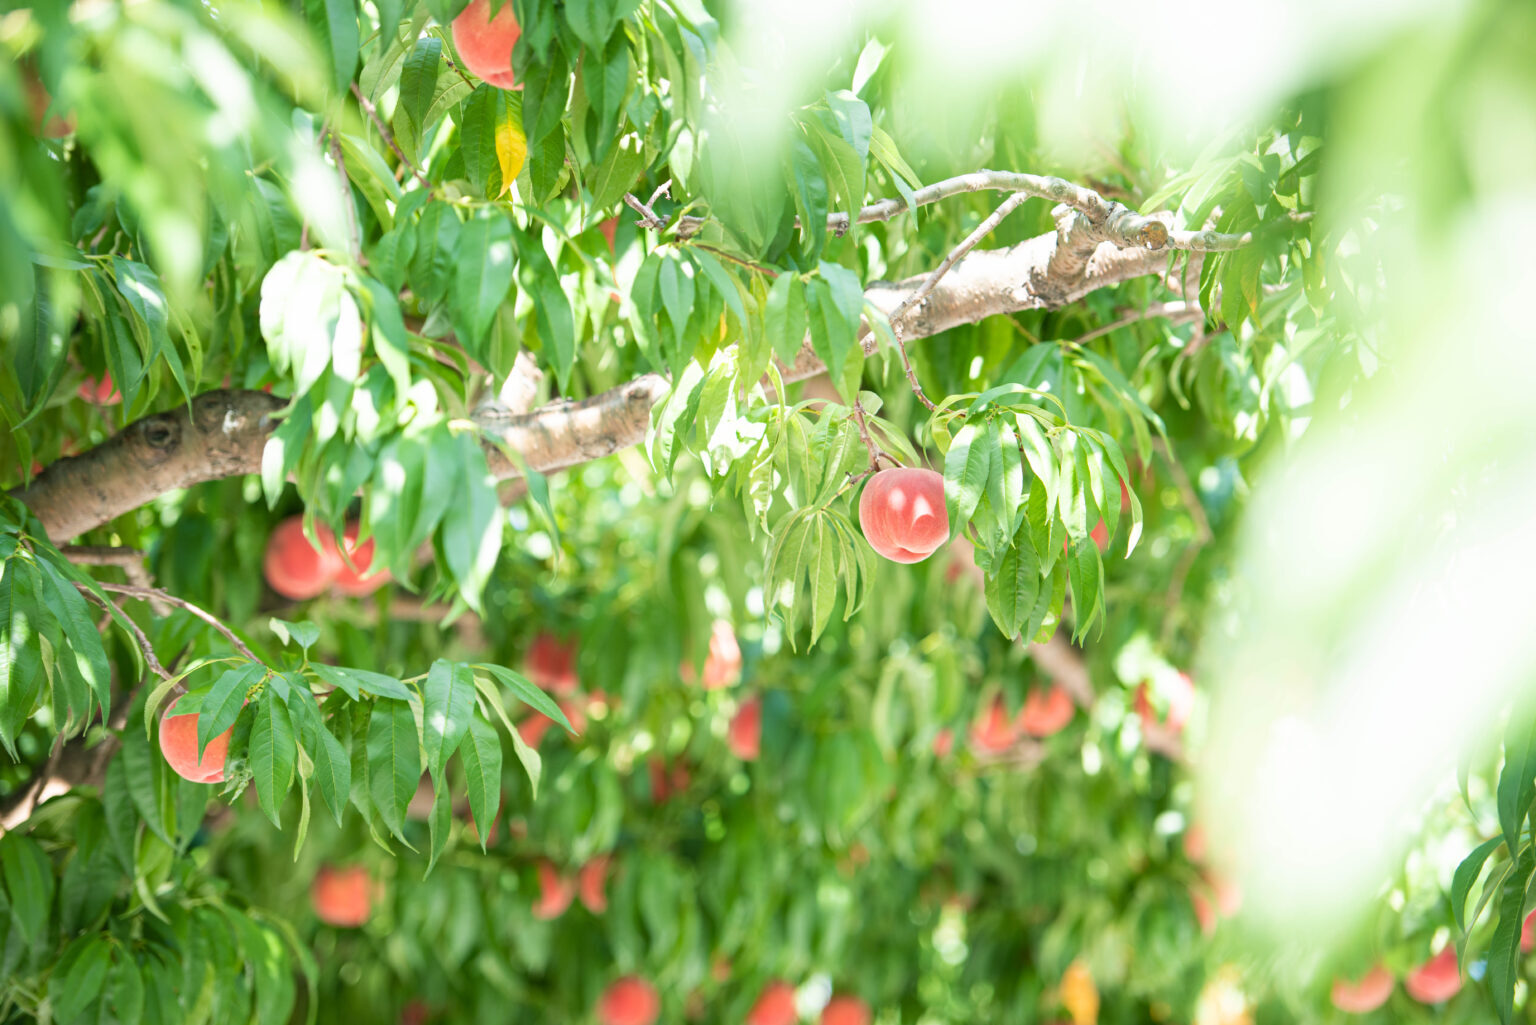 大森園&lt;br /&gt;
小諸には清らかな水と空気があり、晴天が多く、朝晩涼しい高原特有の気候のため、糖度の高い桃のが育つと言われます。小諸を代表する桃農家さんへ、朝一番に訪れます。